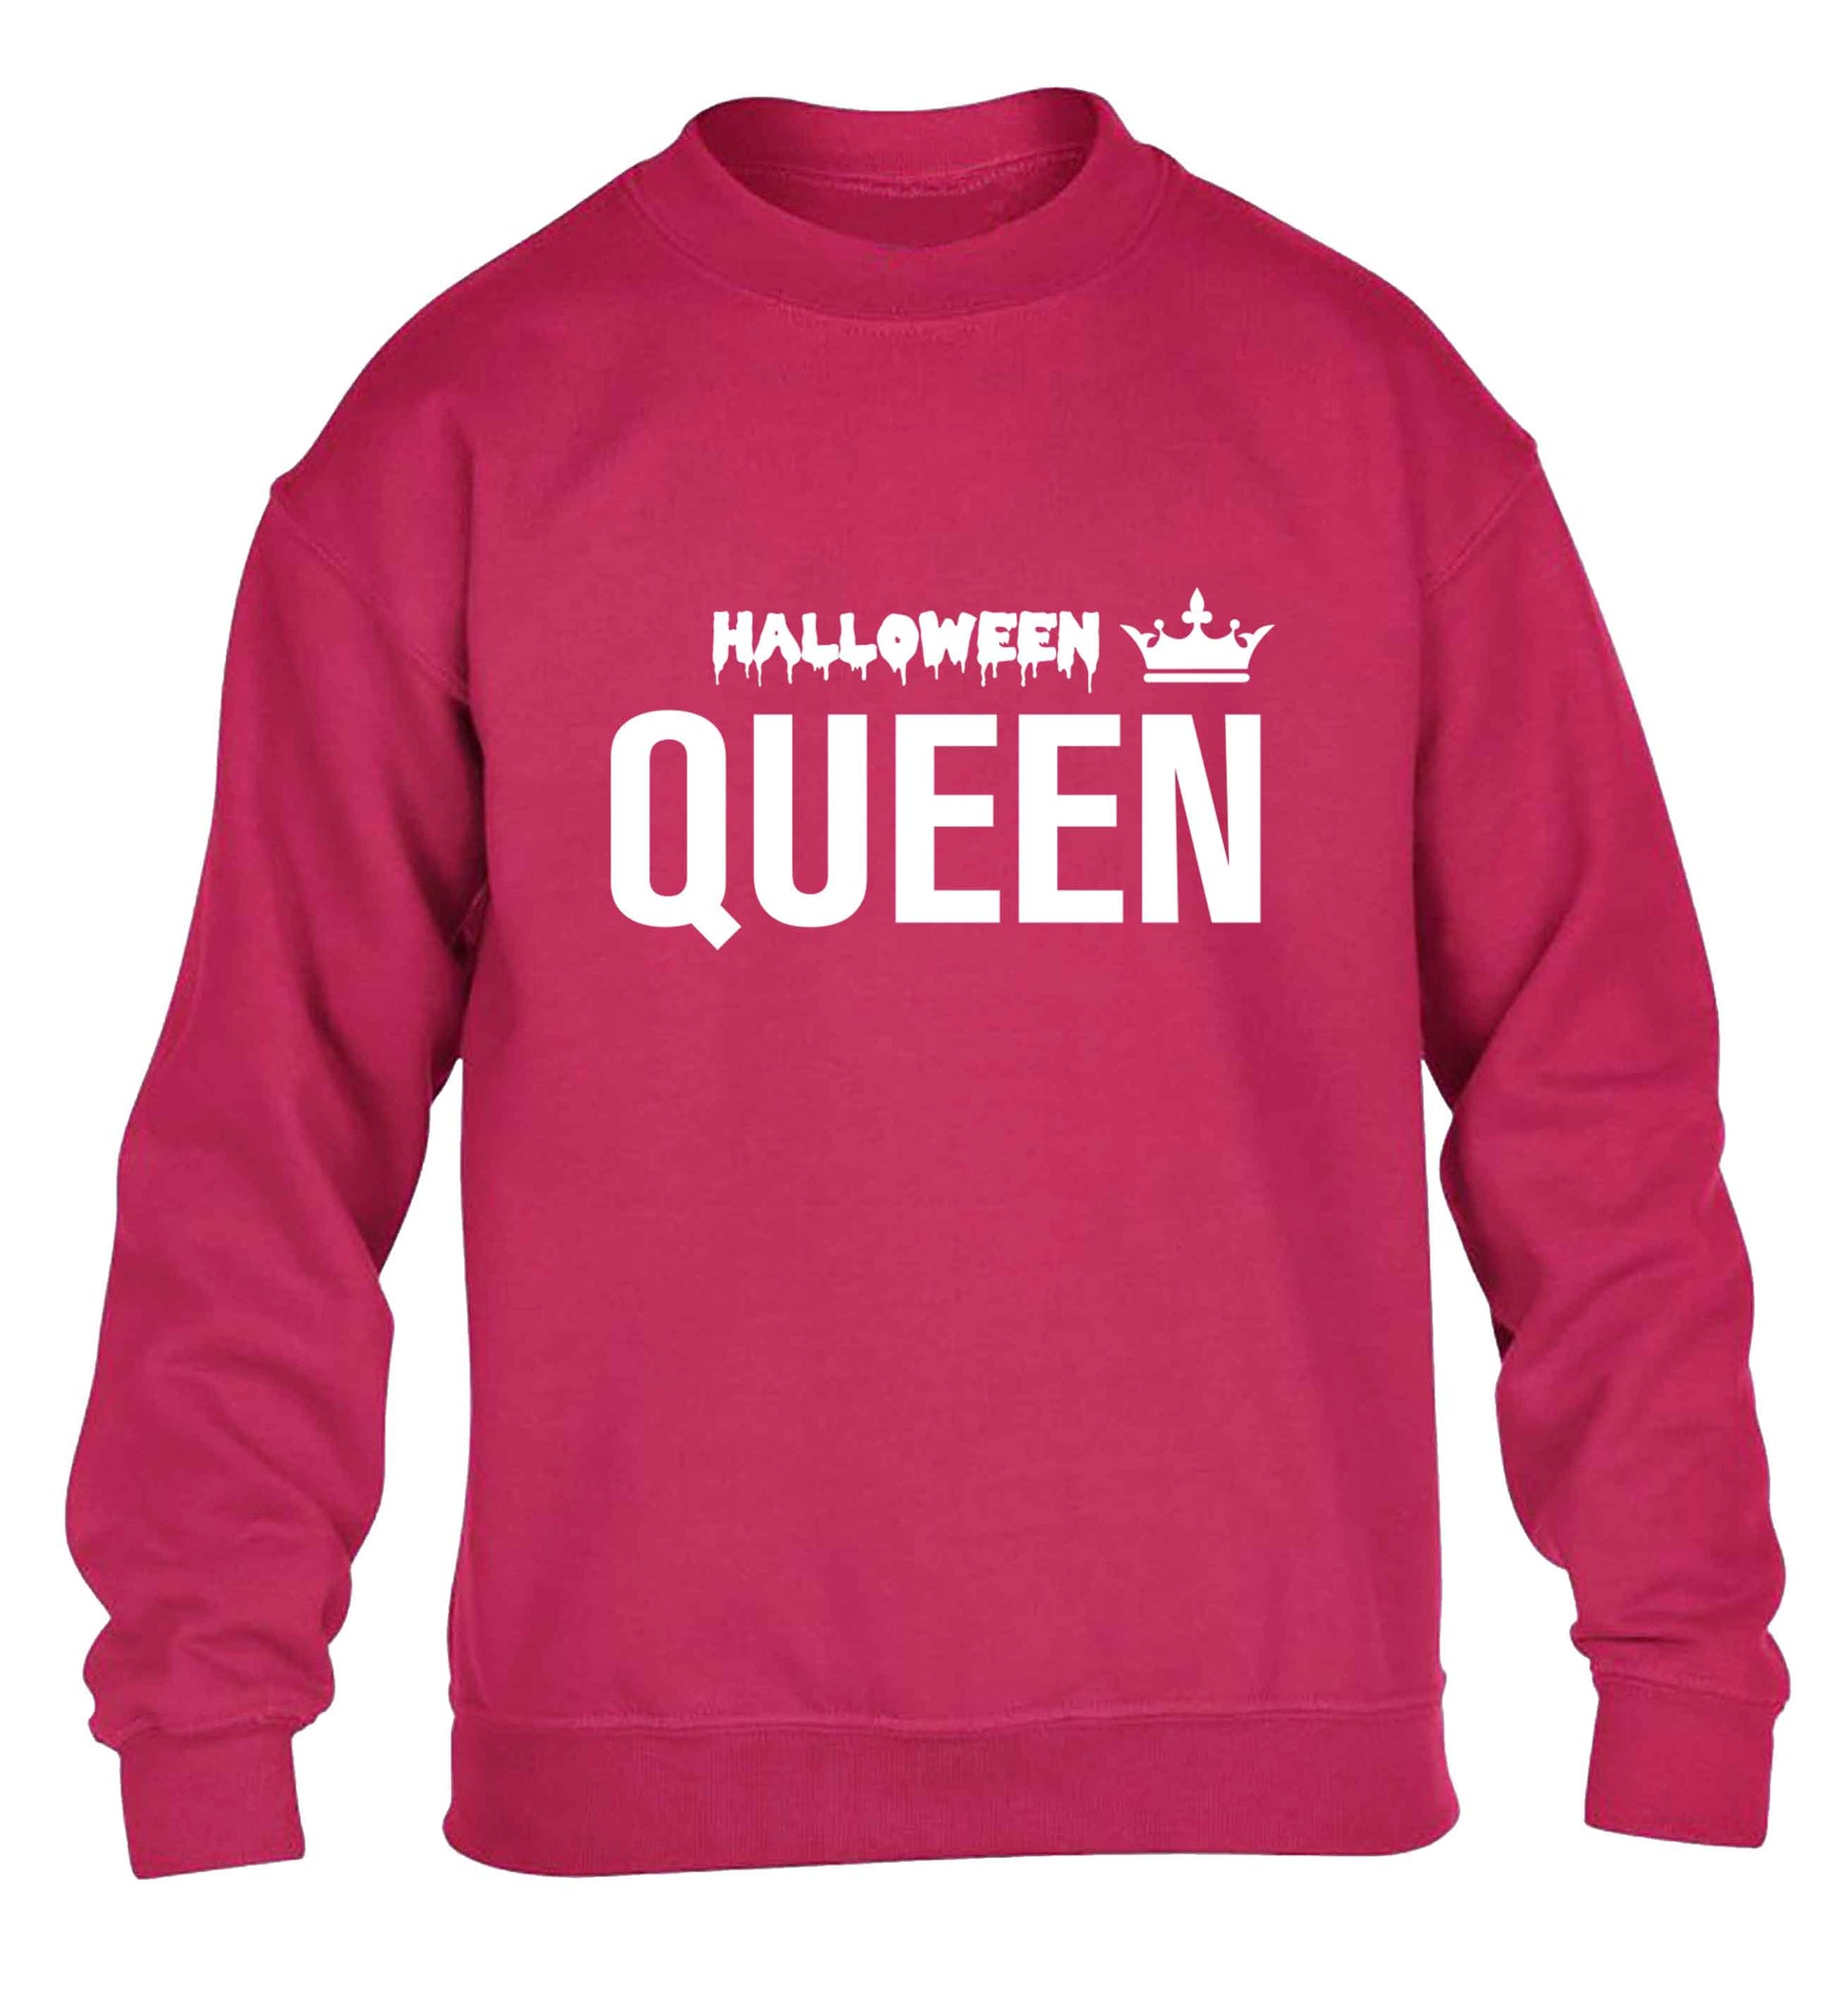 Halloween queen children's pink sweater 12-13 Years